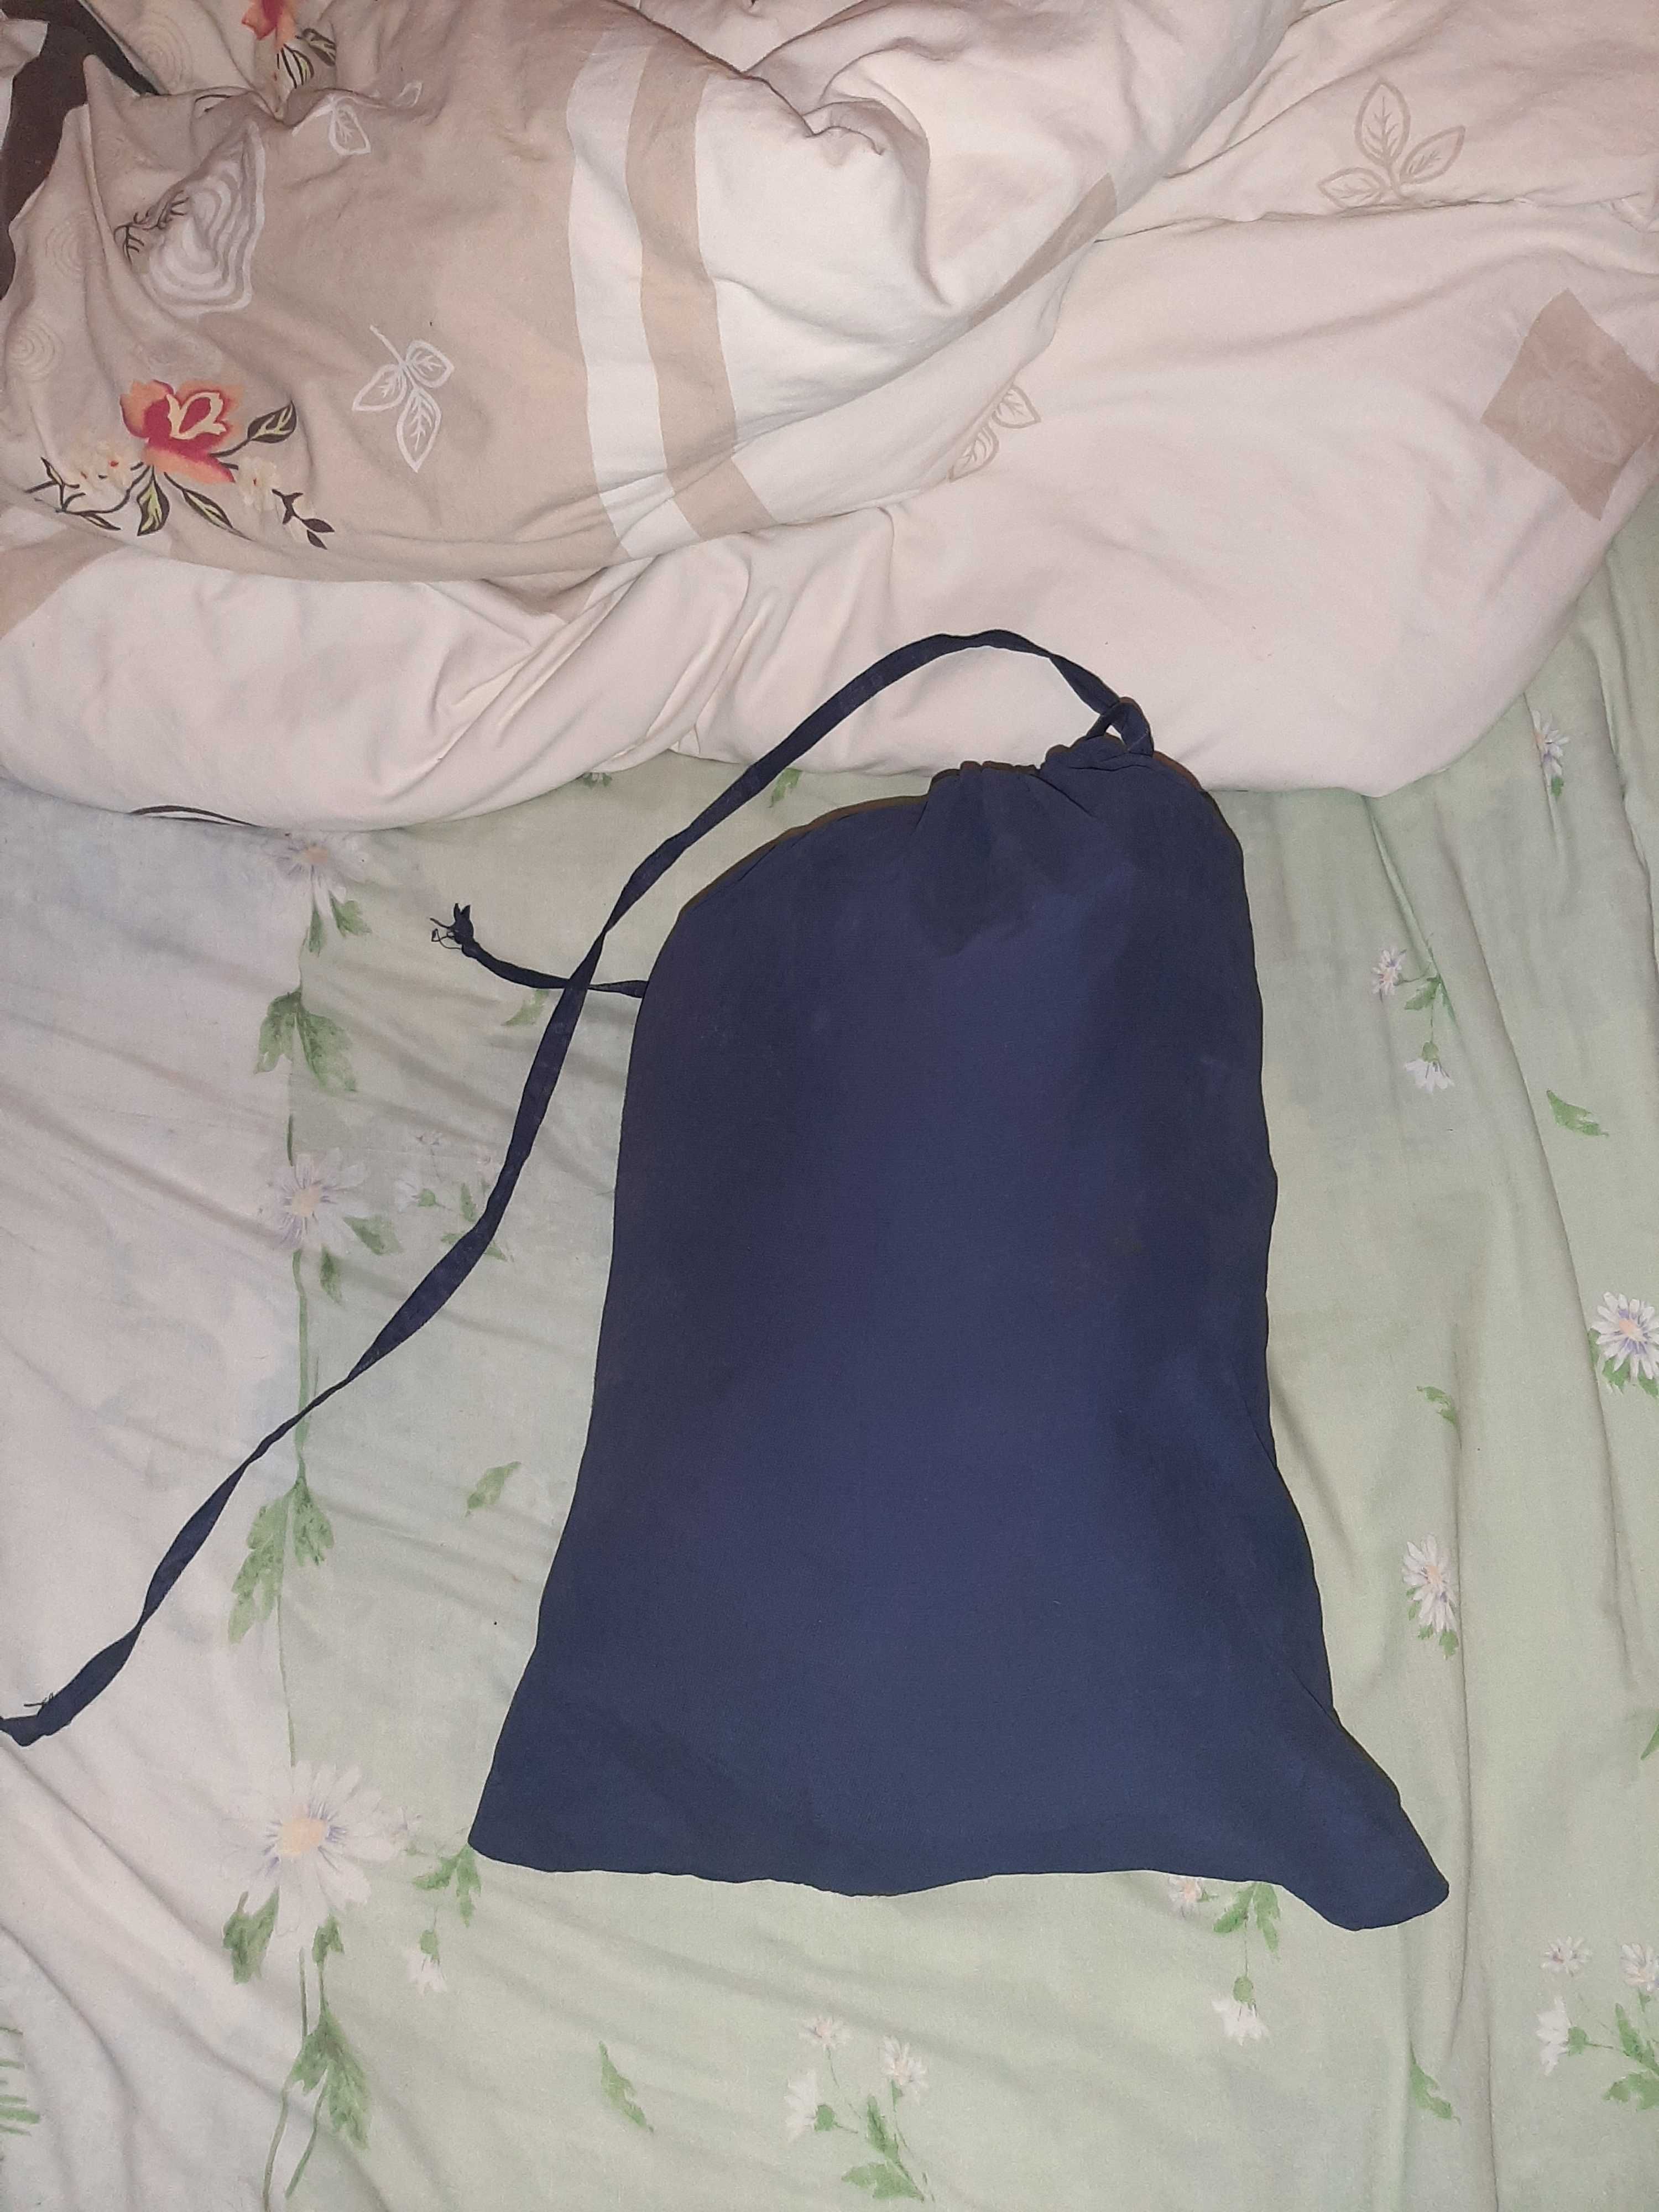 продам спальный мешок большой